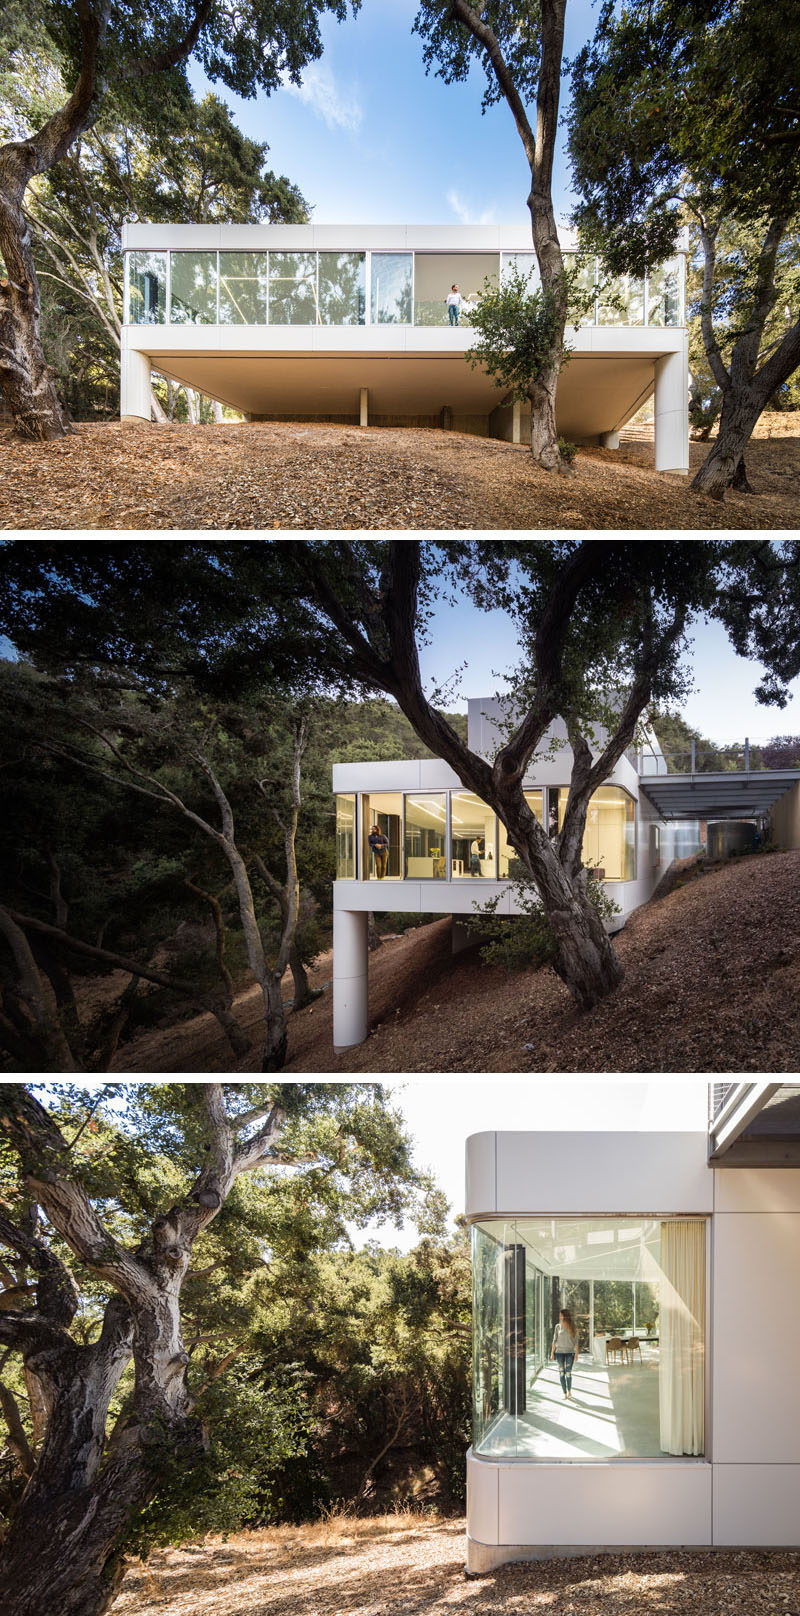  Компания Craig Steely Architecture спроектировала современный дом в Купертино, Калифорния, который стоит перед навесом густой дубовой рощи у подножия гор Санта-Крус. #ModernArchitecture #ModernHouse 